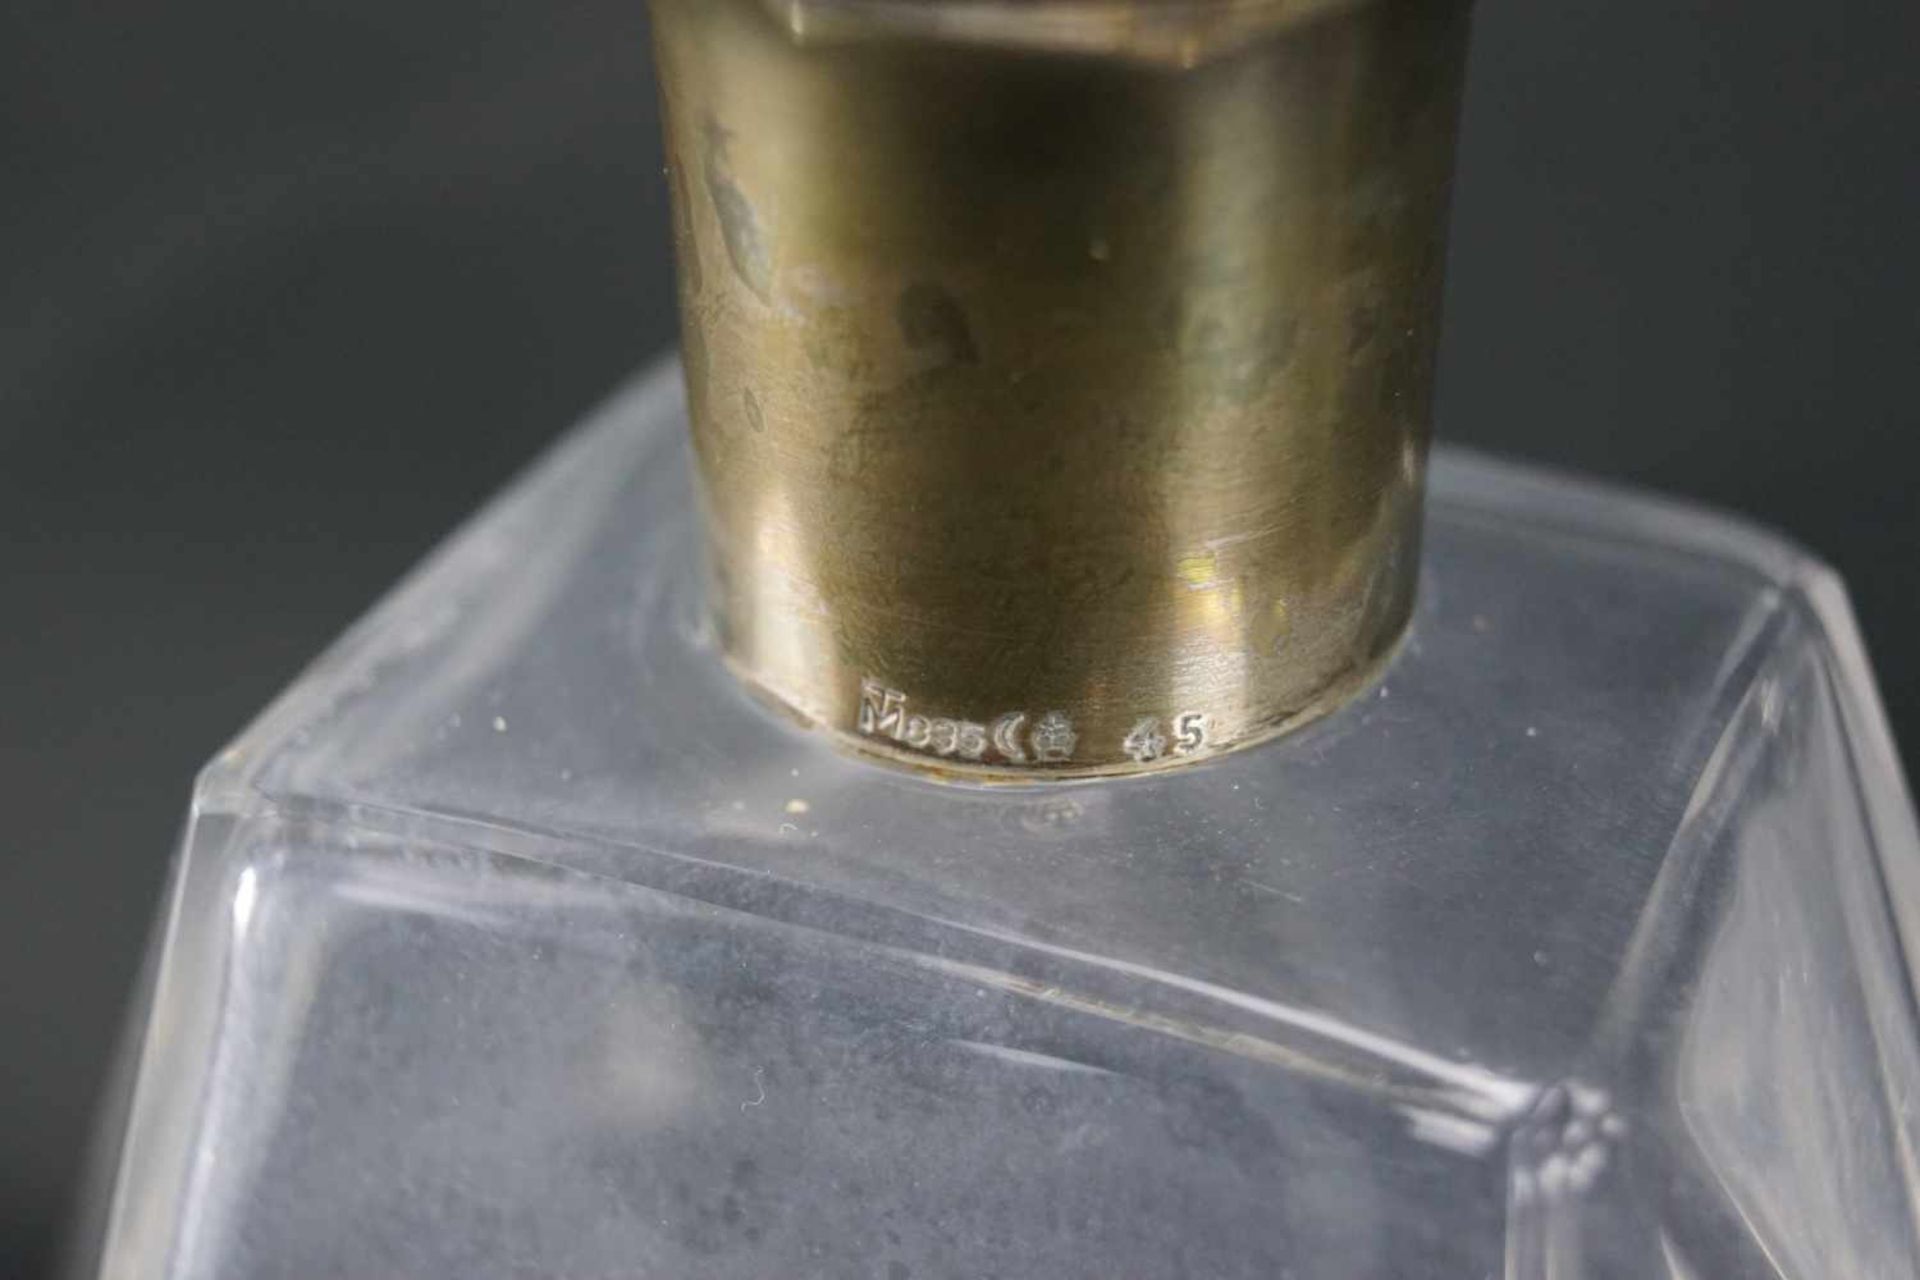 Kristallkaraffe mit SilbermonturSilber, nicht gepunzt, Höhe 24,5 cm x Länge 14 cm x Breite 9 cm, - Bild 3 aus 4